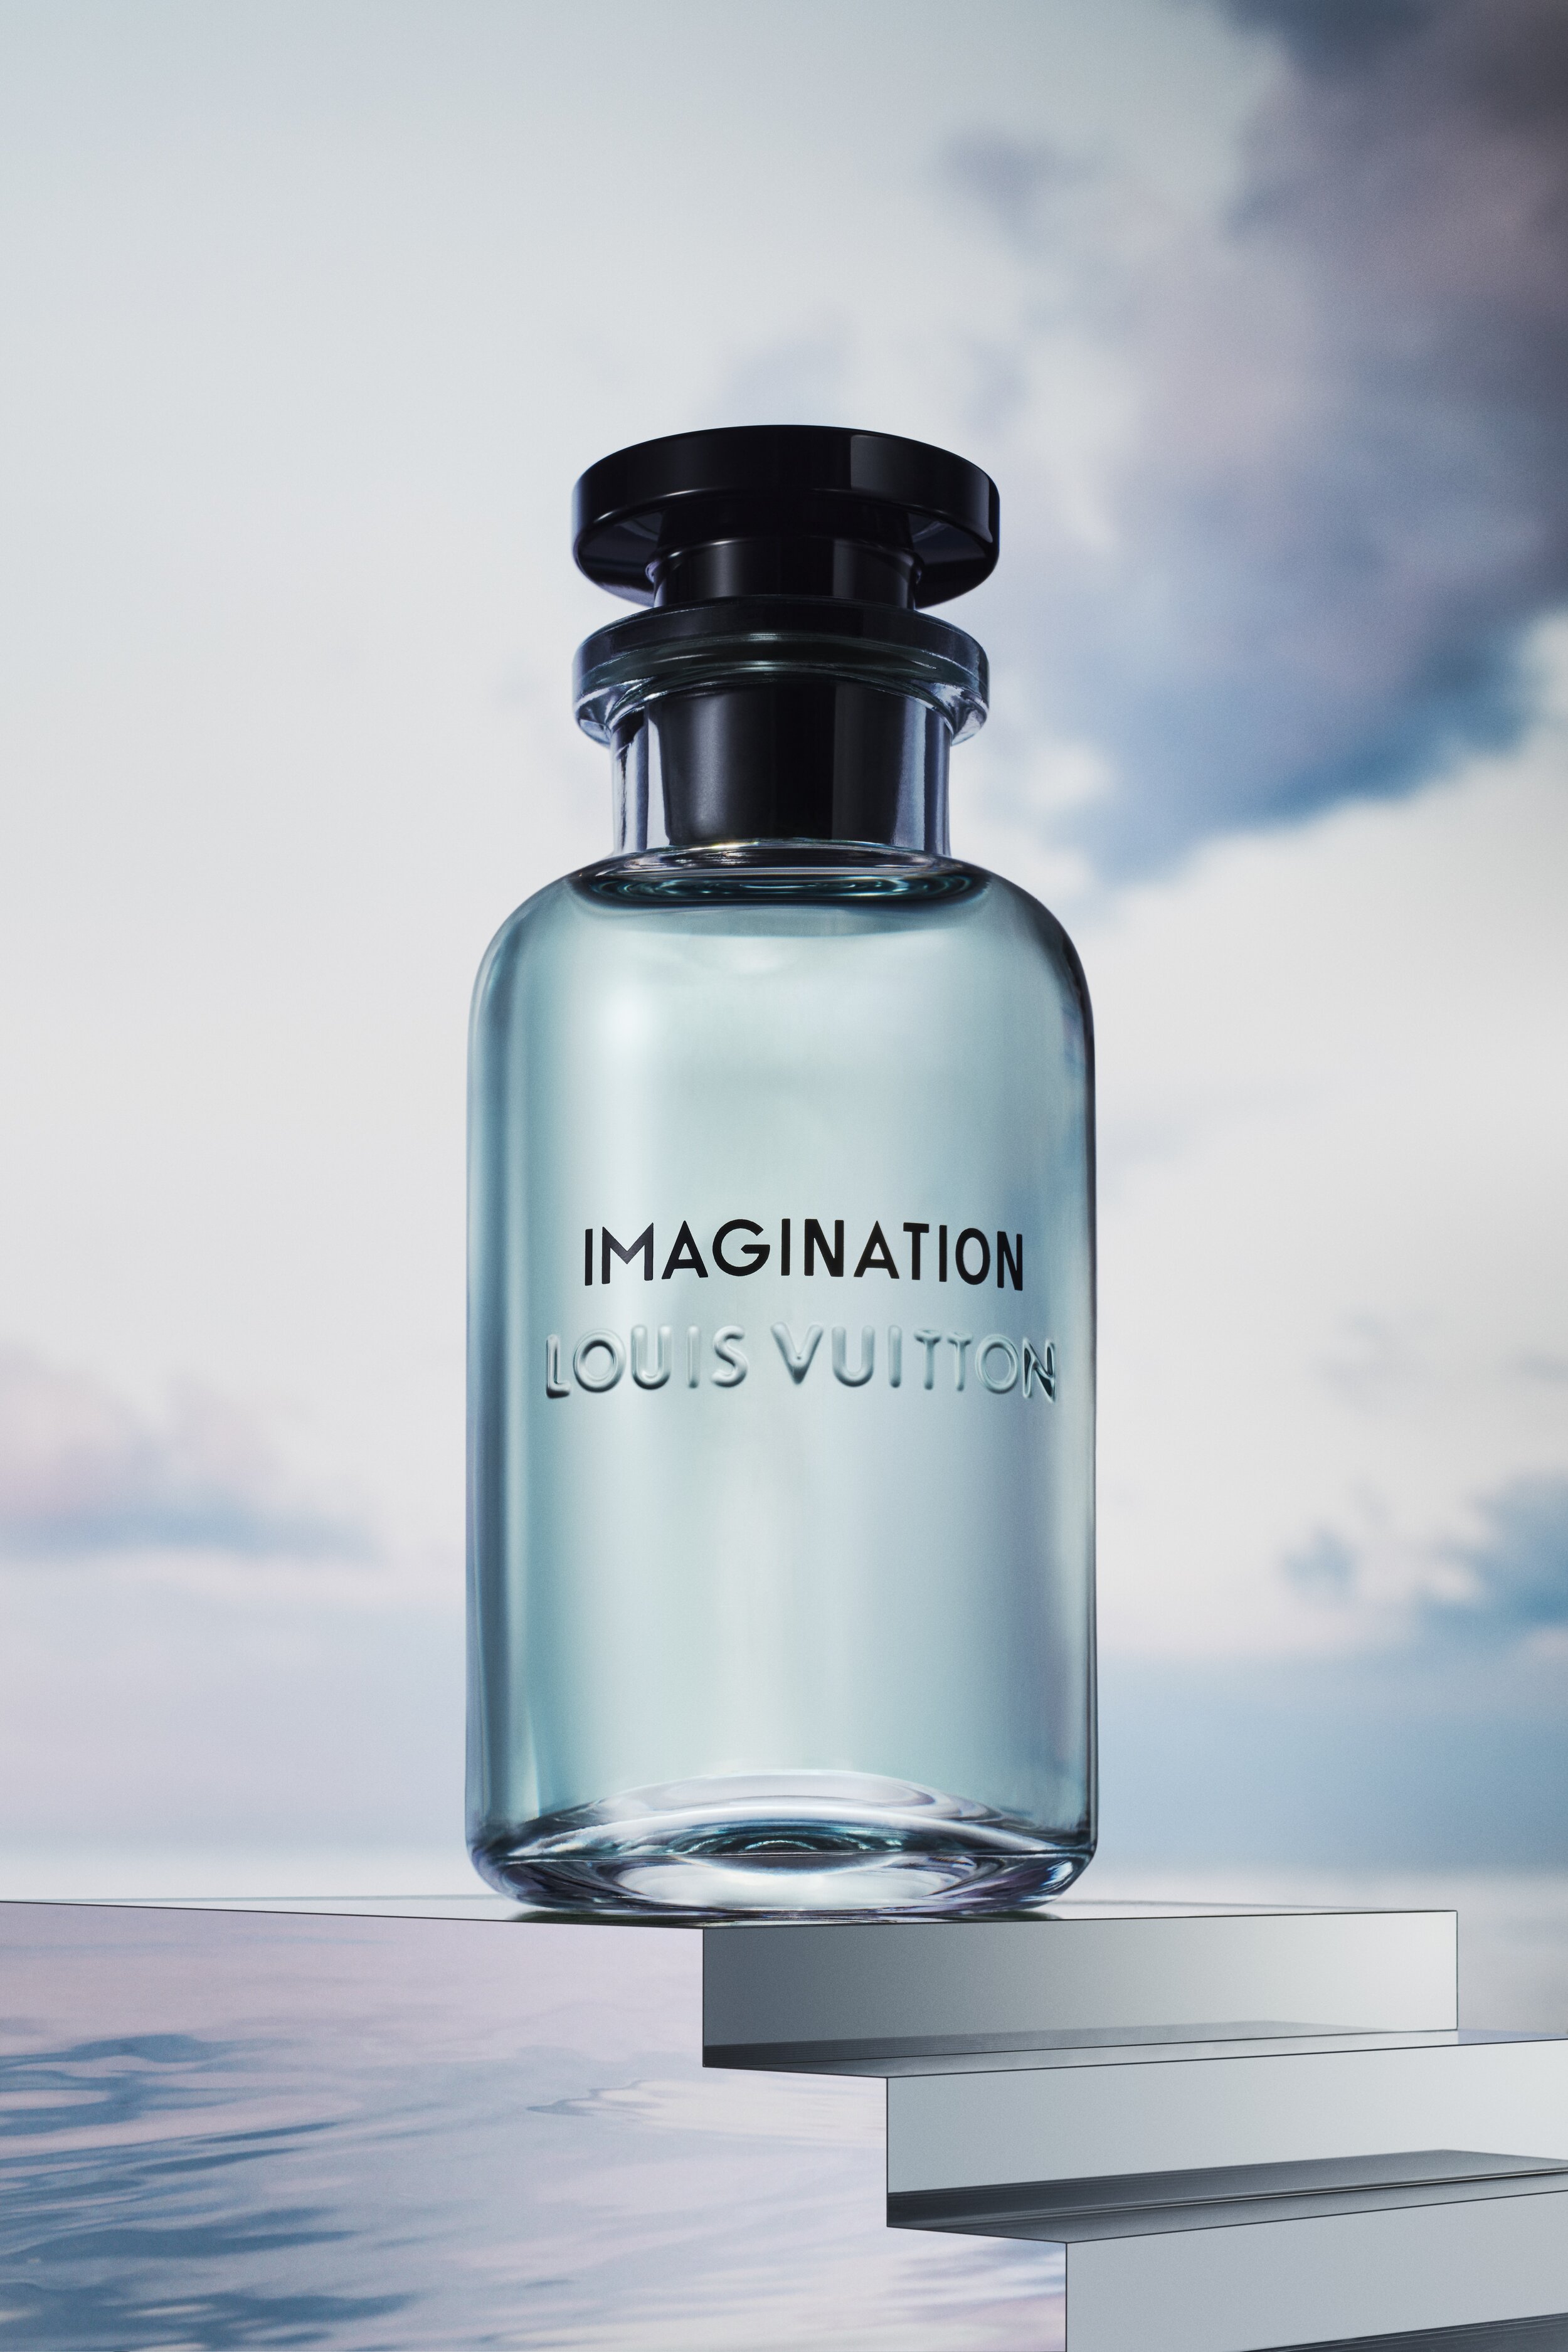 LOUIS VUITTON IMAGINATION